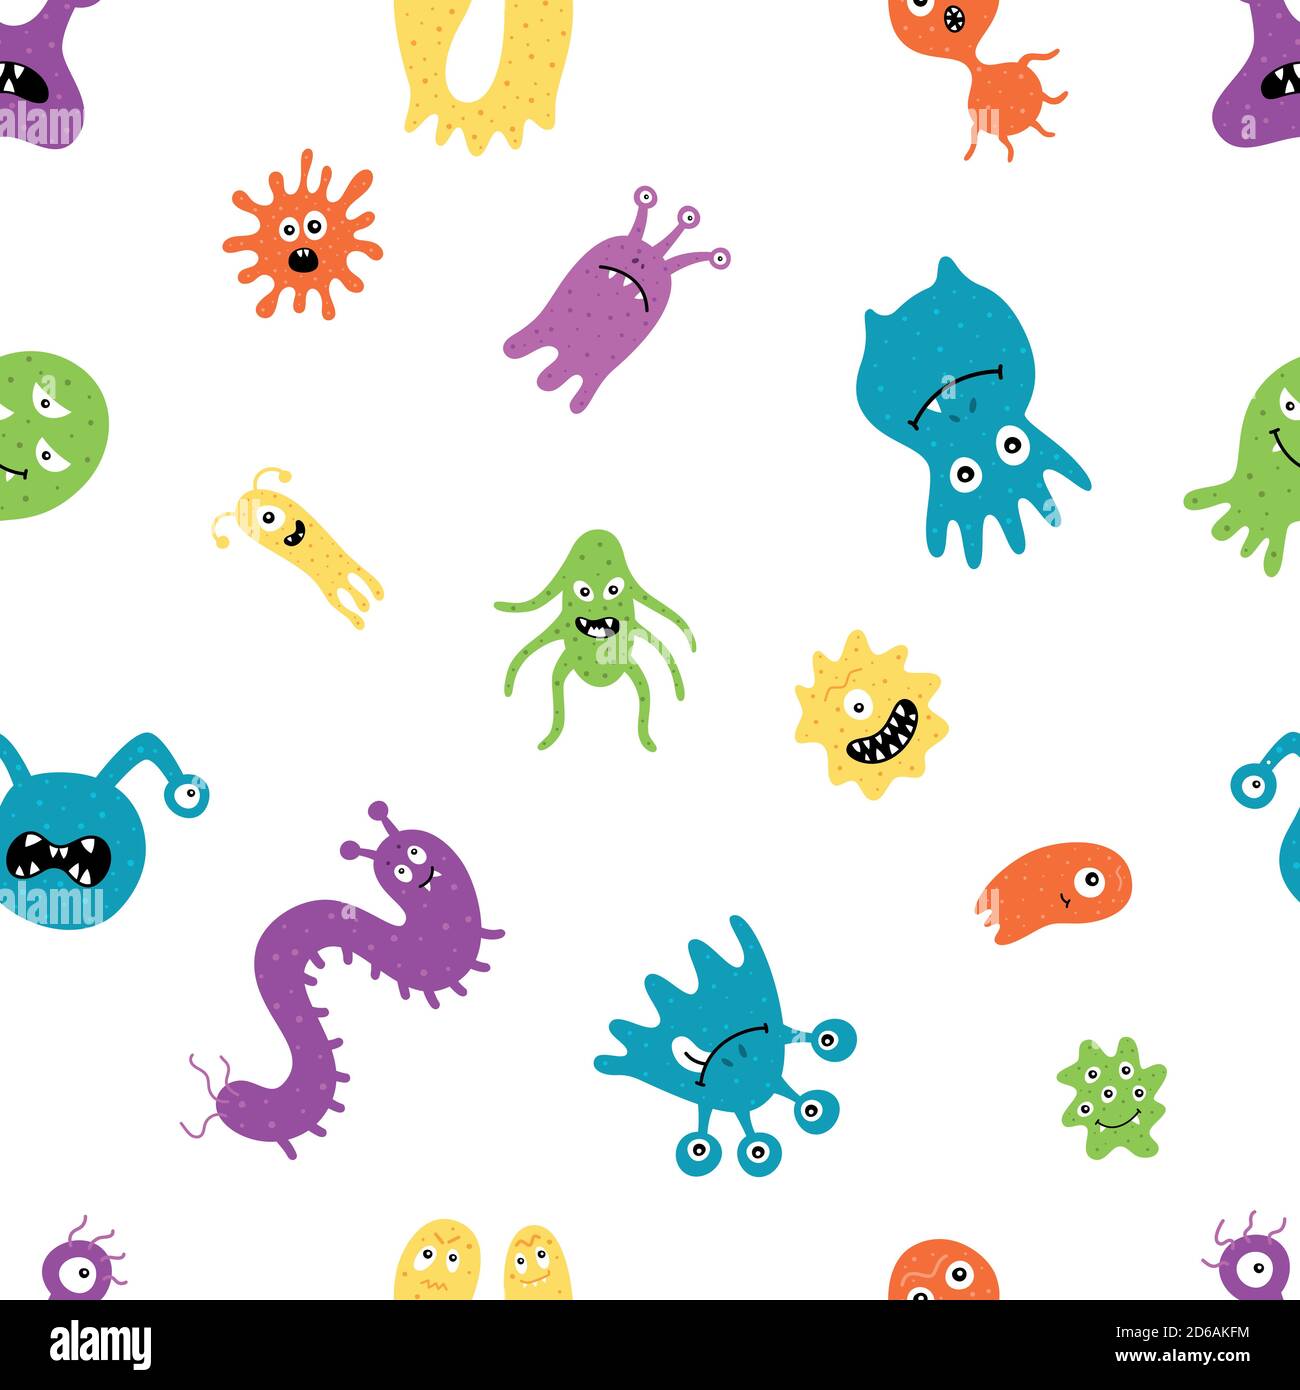 Heilen Sie das Virus. Behandlung. Krankheiten. Mikroben, Vektorgrafiken auf weißem Hintergrund. Muster Stock Vektor